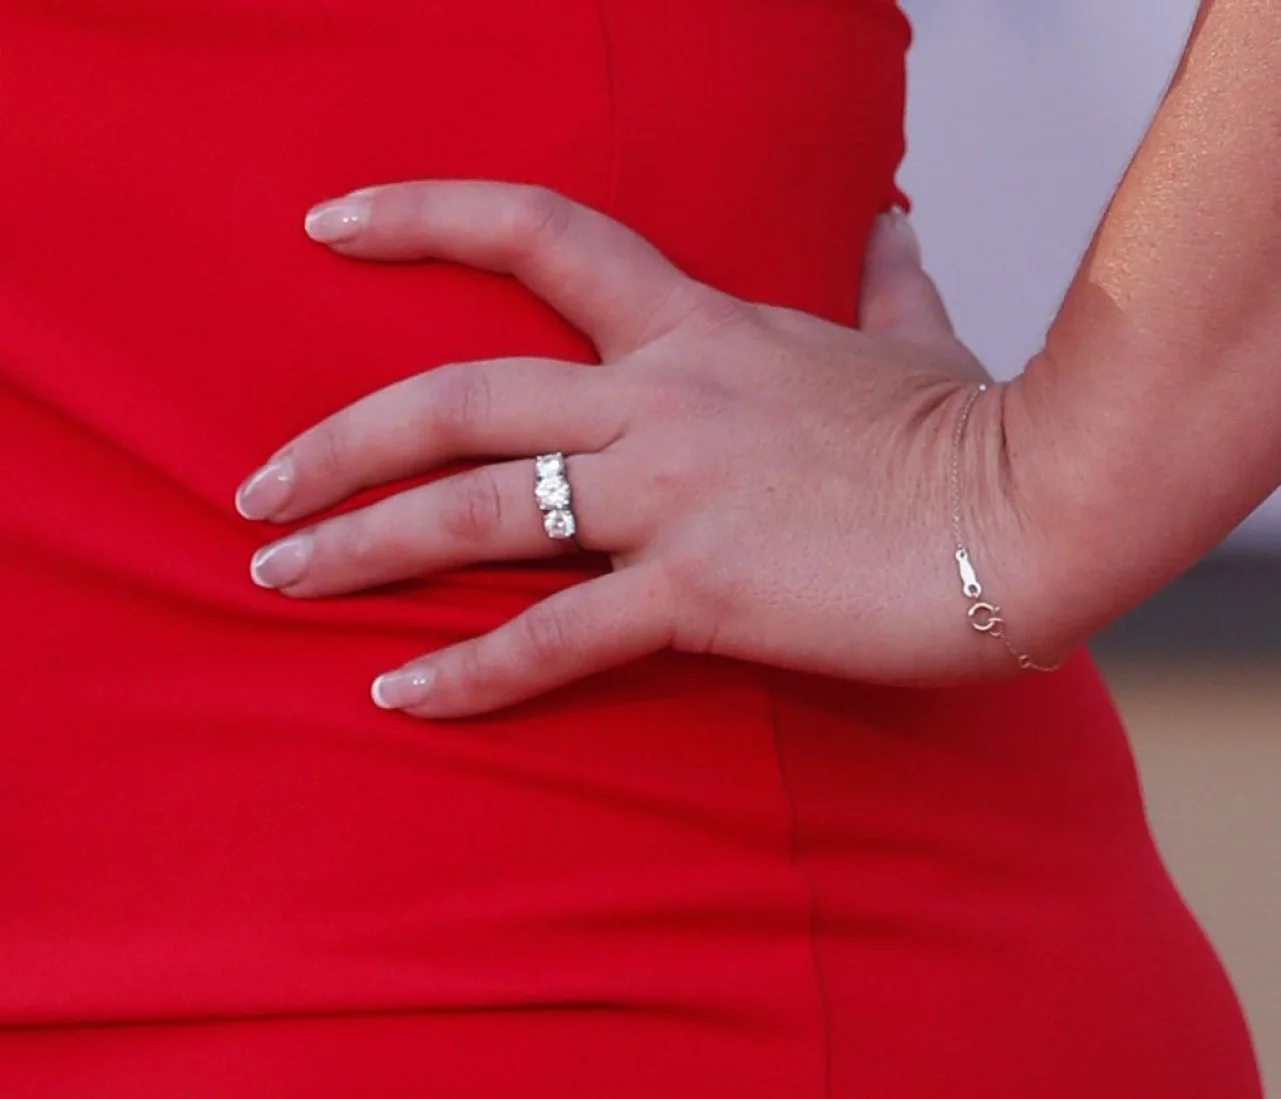 Брітні Спірс виходить заміж, і вже показала свою розкішну обручку - фото 443066